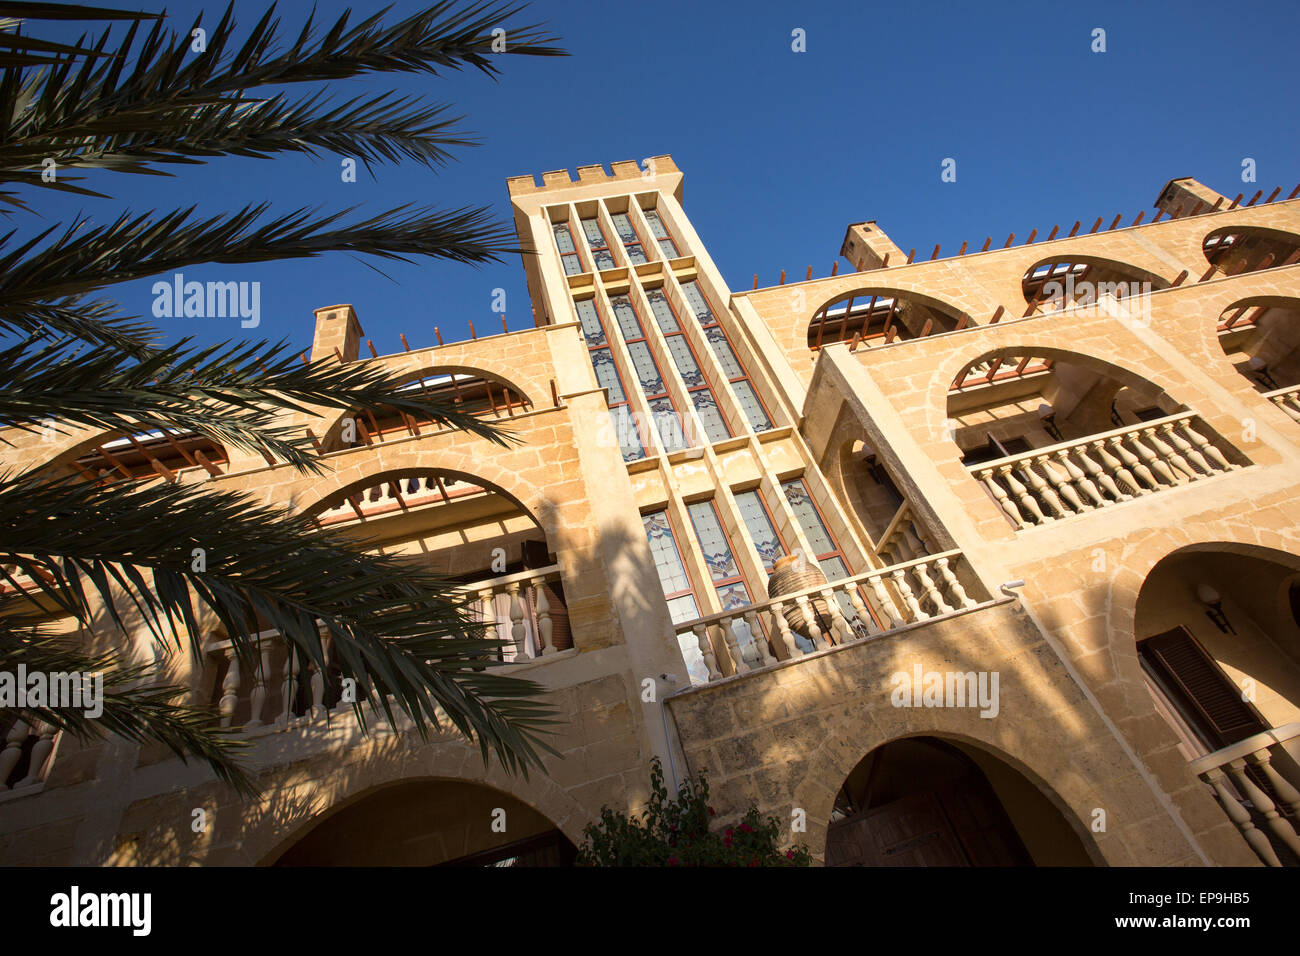 Un hôtel de style château dans le nord de Chypre Banque D'Images